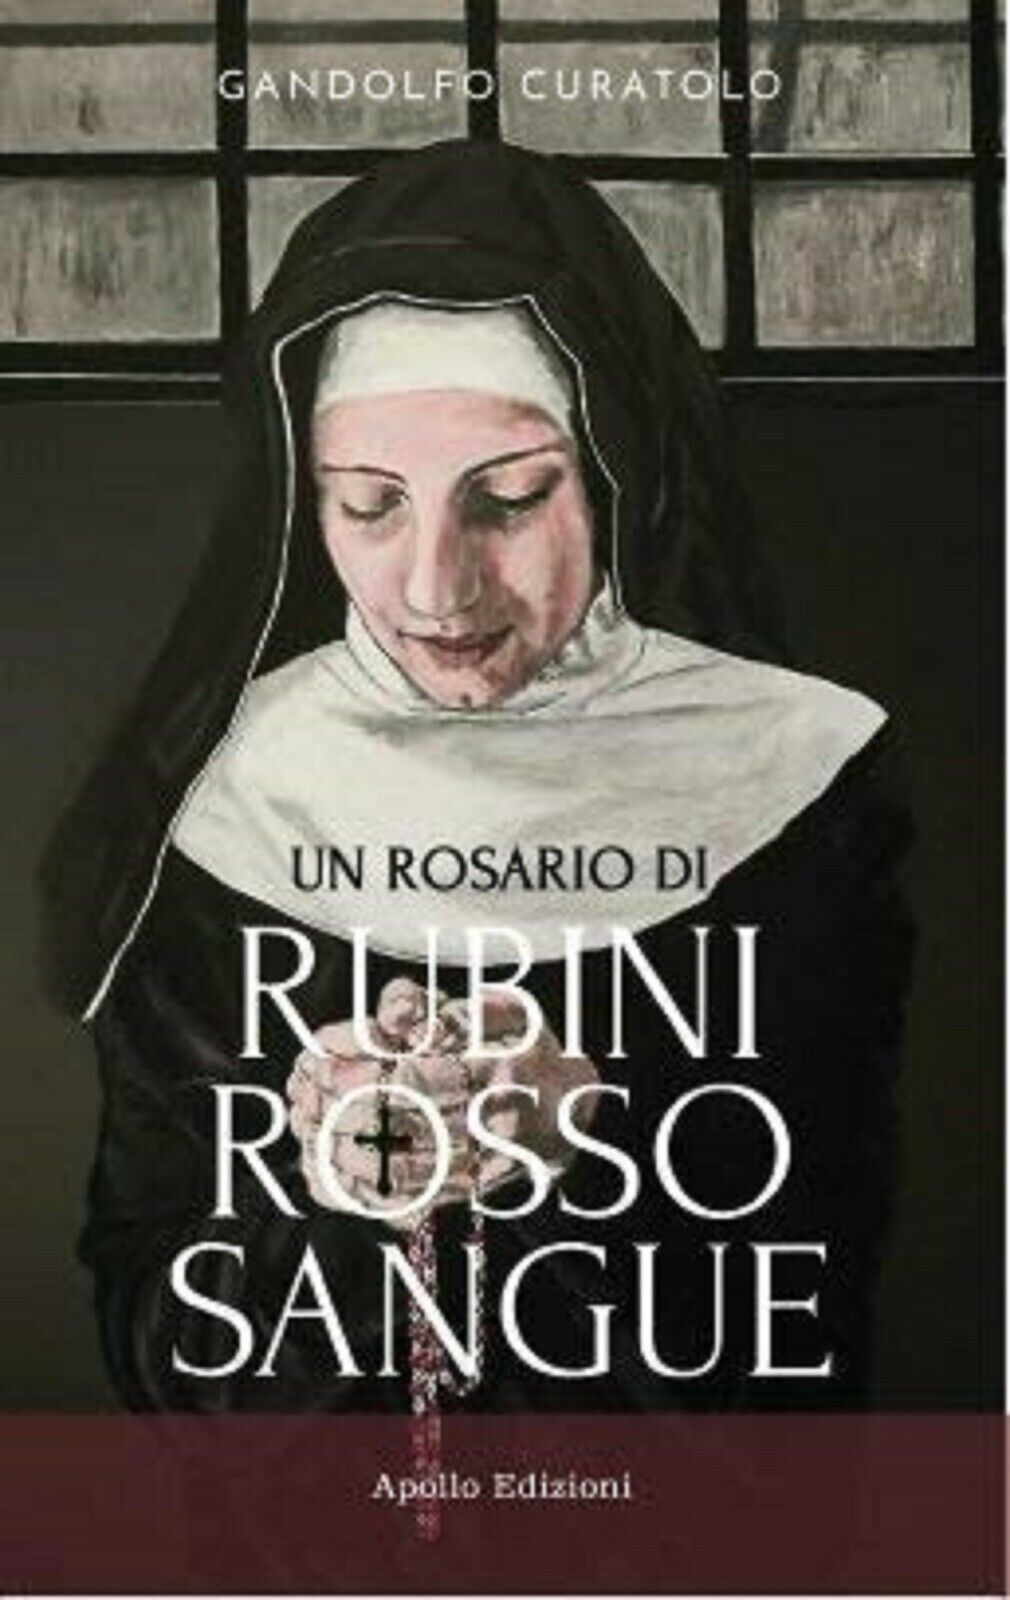 Un rosario di rubini rosso sangue - Gandolfo Curatolo,  2020,  Apollo Edizioni